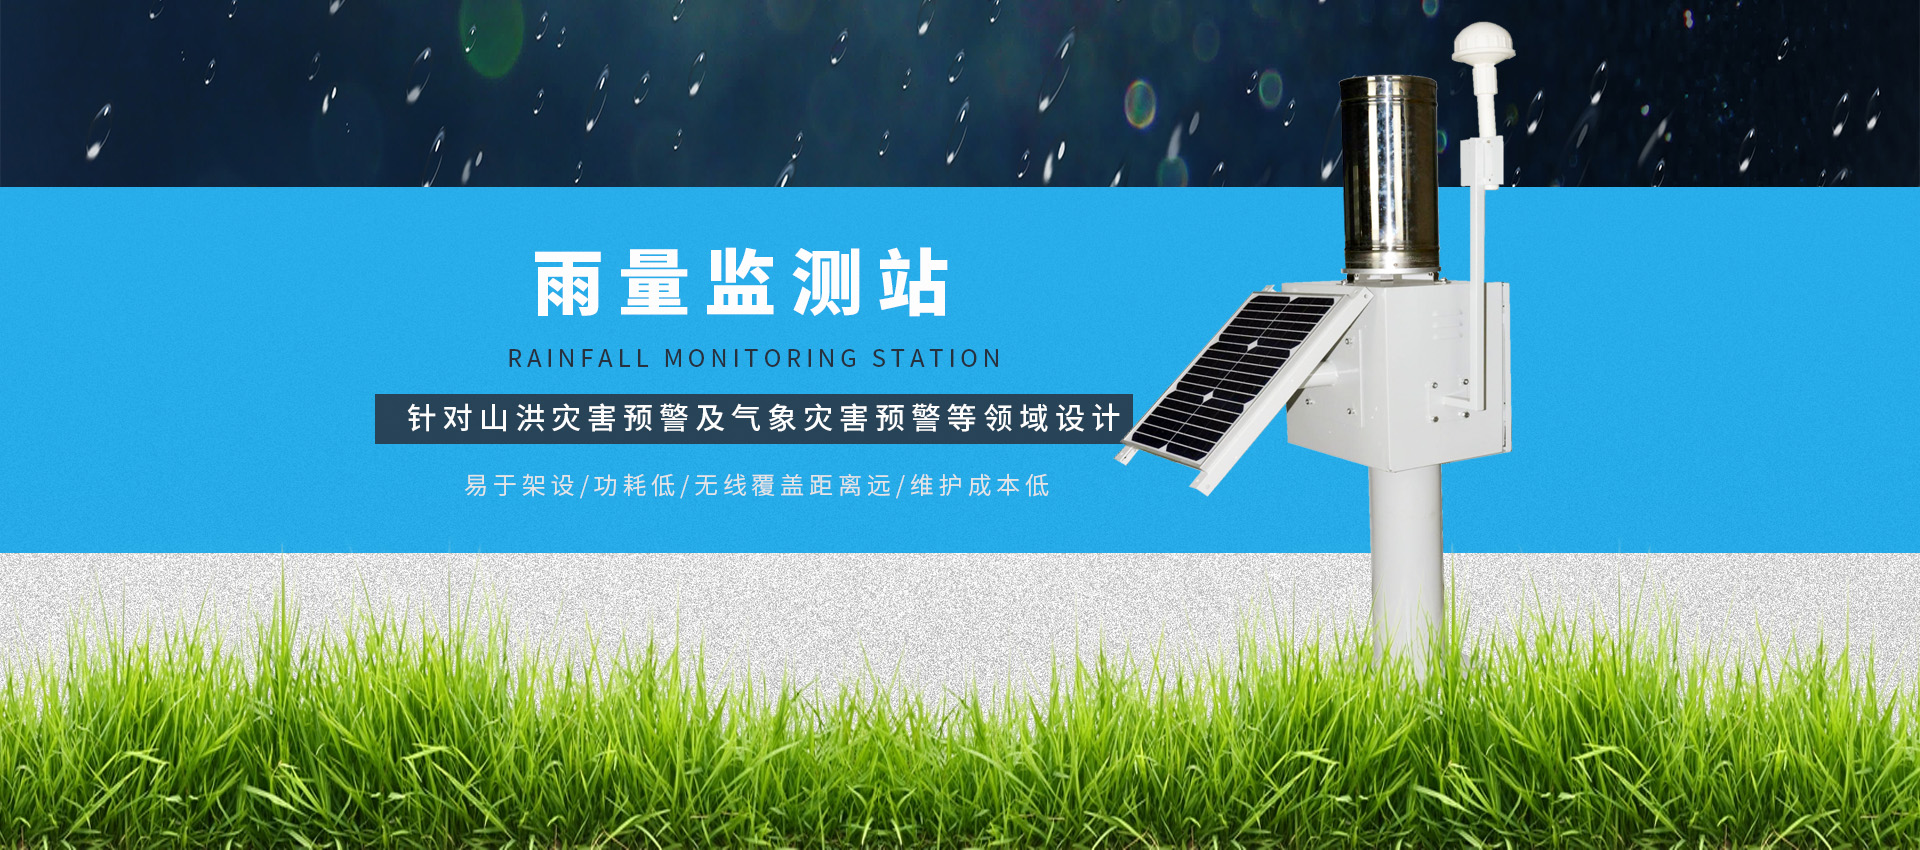 全自動太陽能降雨量監測站系統|雨量監測設備.jpg